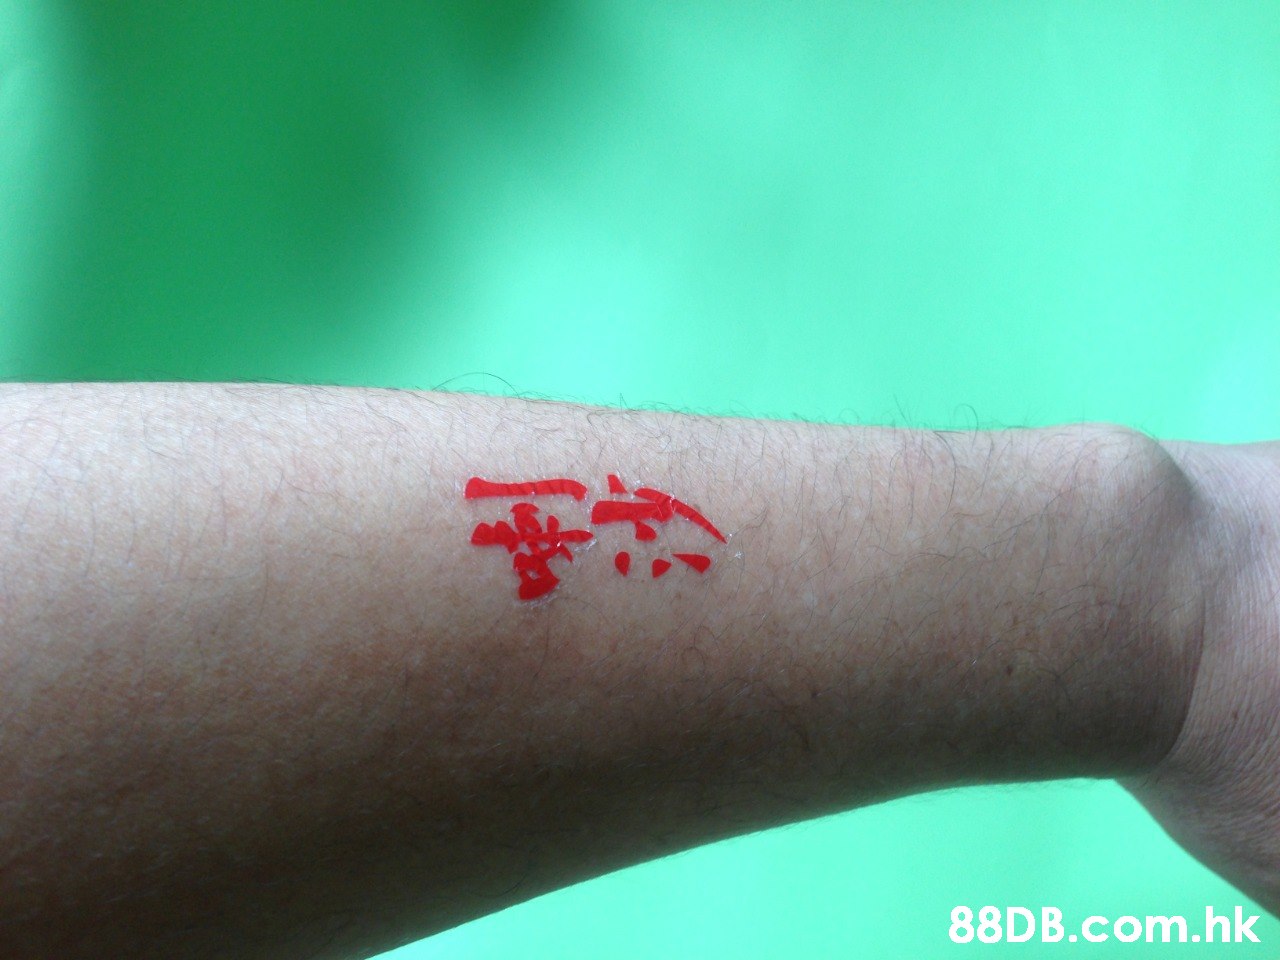 88D B.com.hk  Skin,Joint,Arm,Finger,Hand